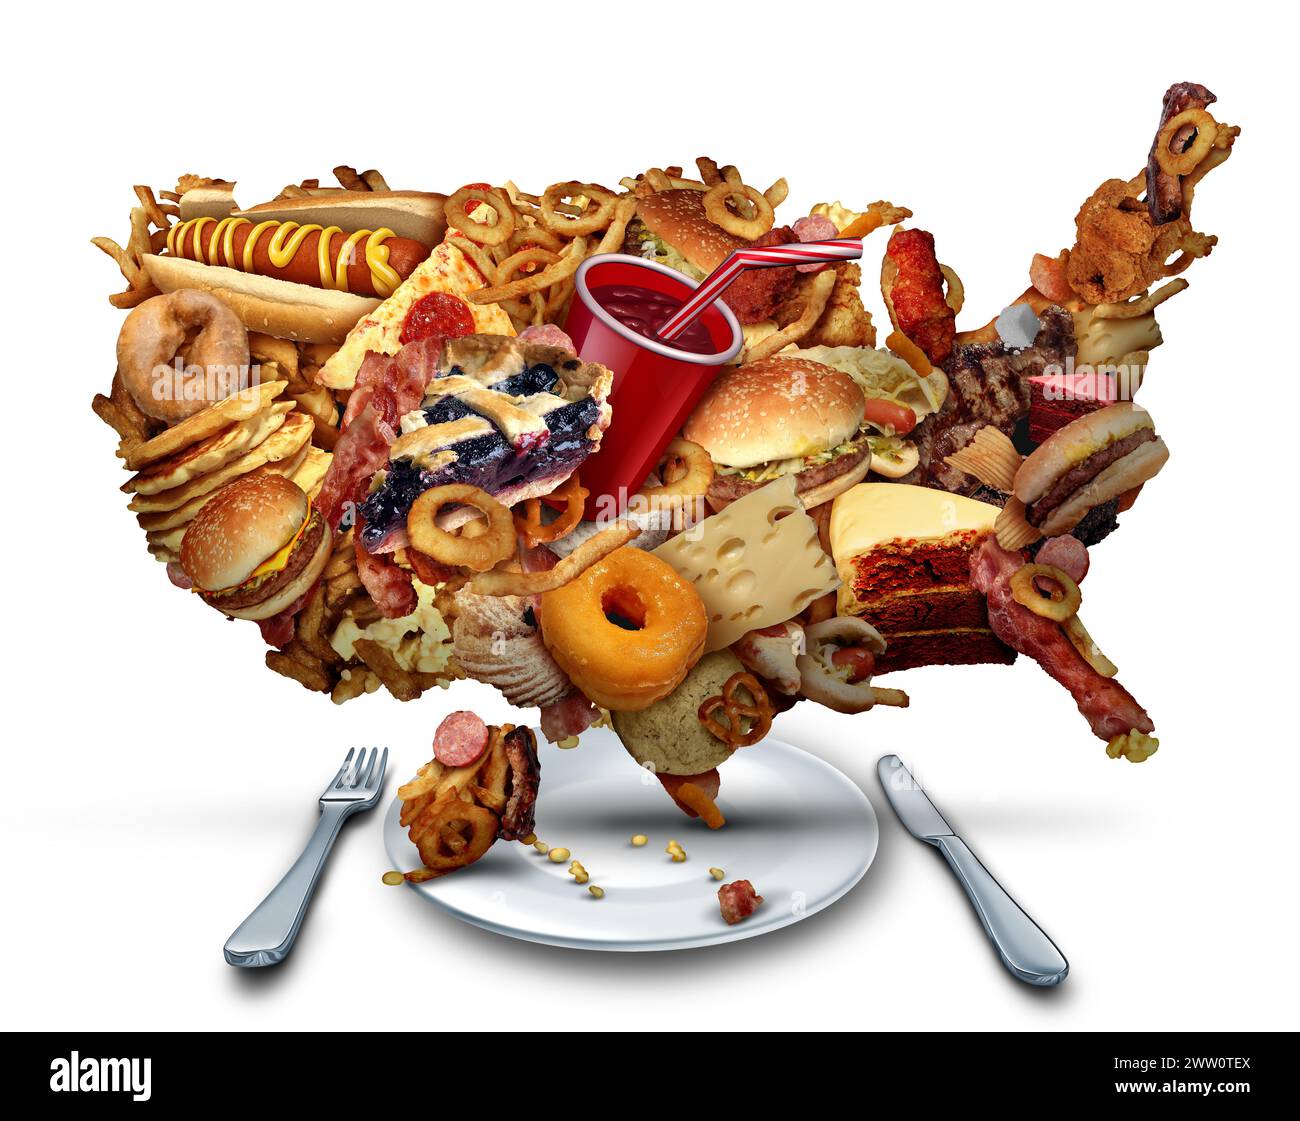 US mauvaises habitudes alimentaires et American Junk Food Crisisor fast-food Diet comme question nutritionnelle des États-Unis représentant l'obésité en Amérique et gras Banque D'Images